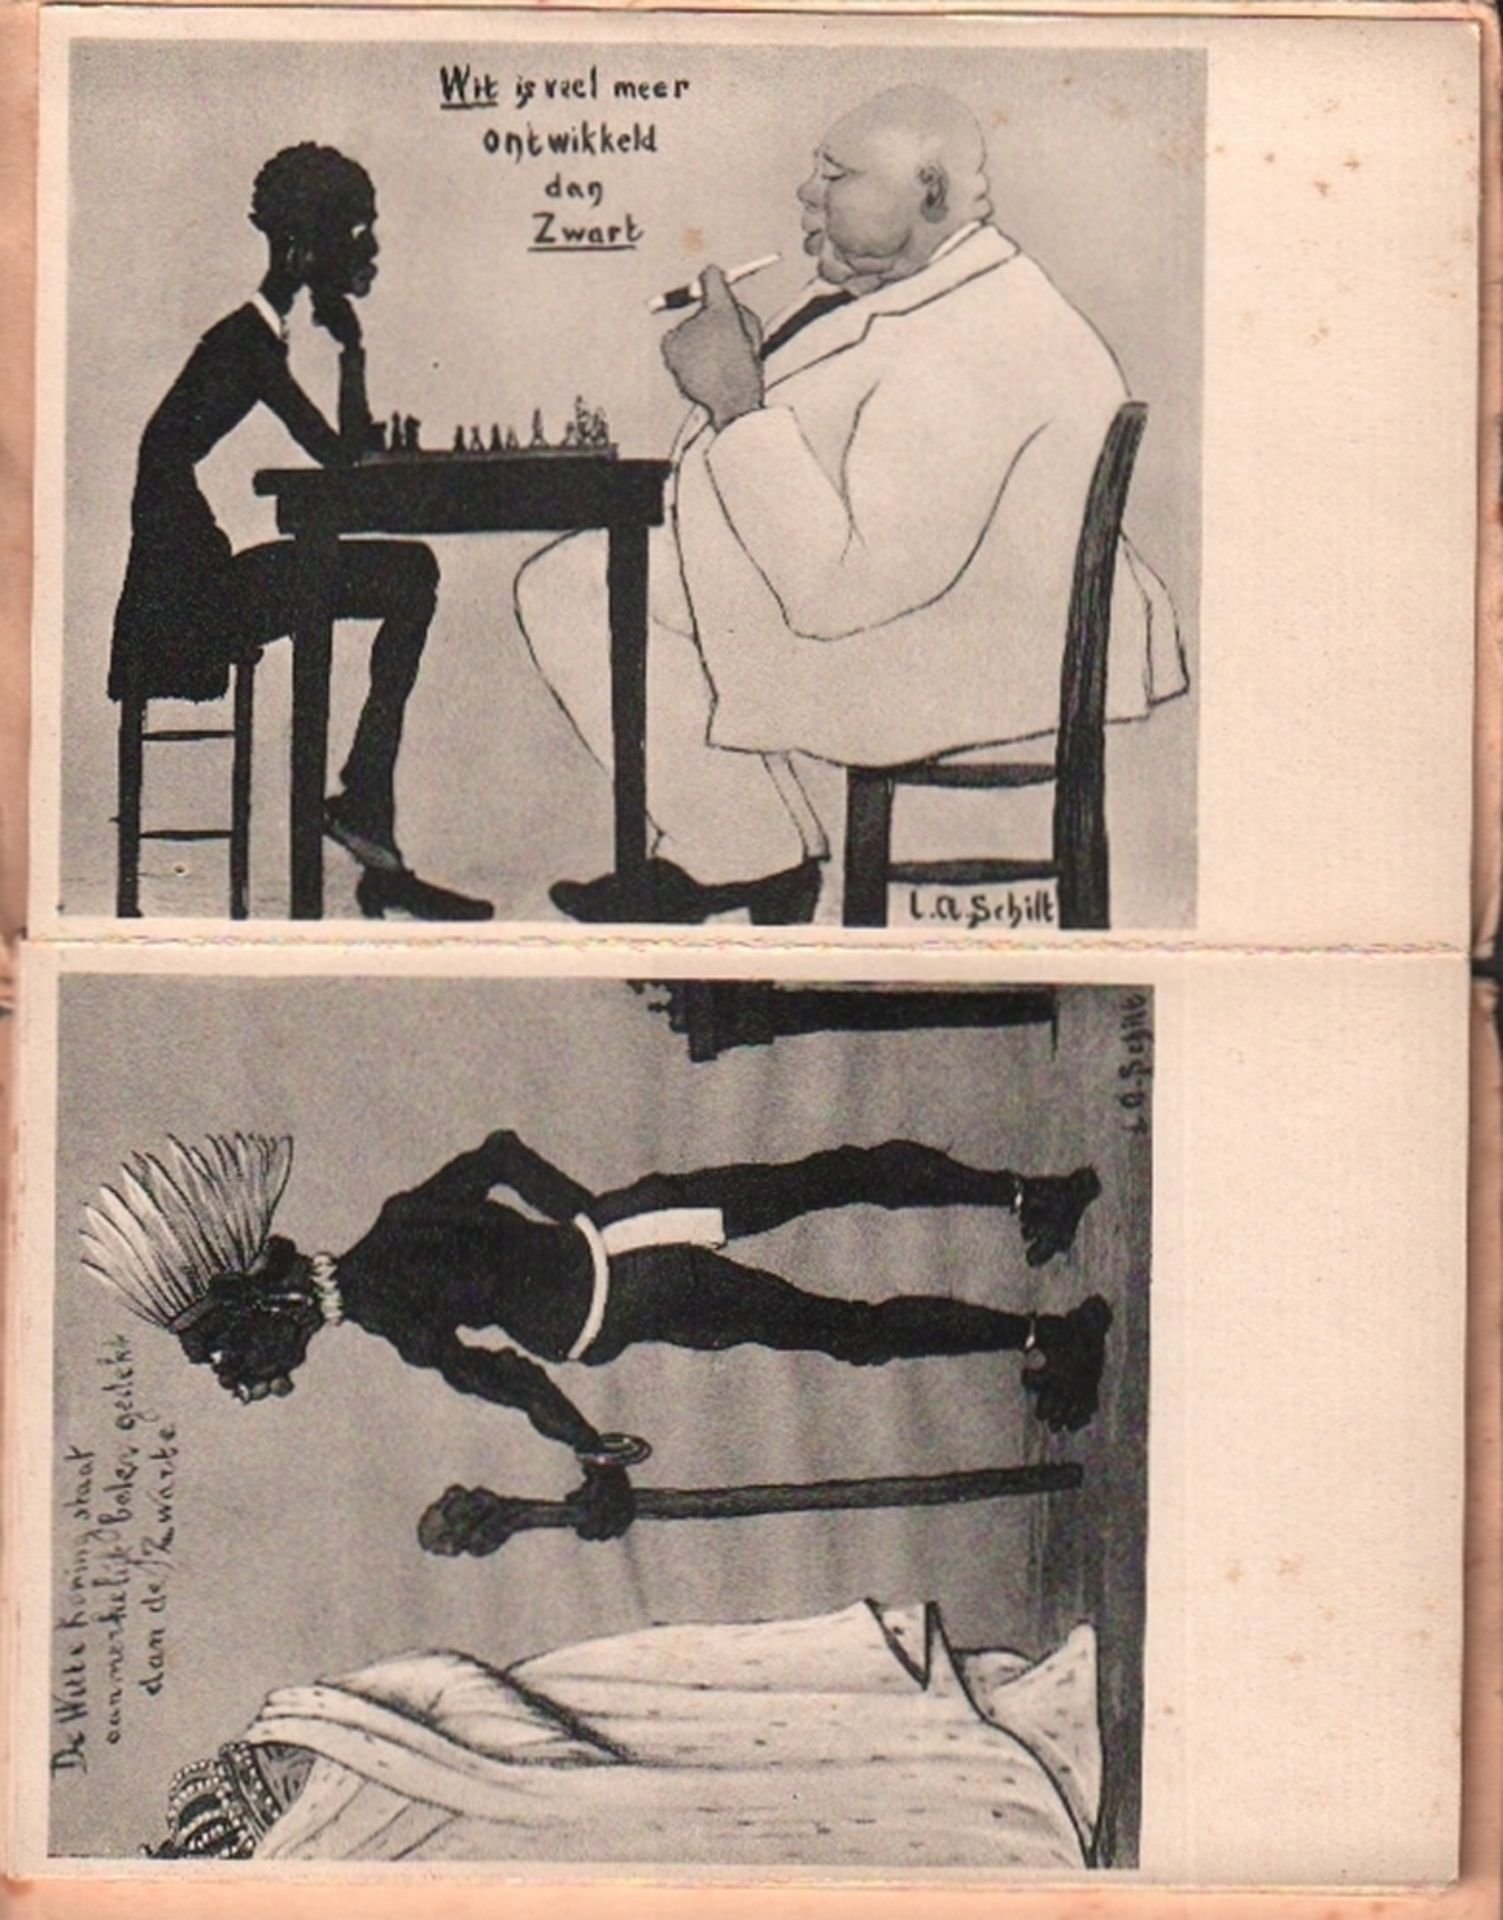 Postkarte. Schilt, L. A. 10 Schaak – Caricaturen naar tekeningen door L A. Schilt. Leporello mit - Image 3 of 3